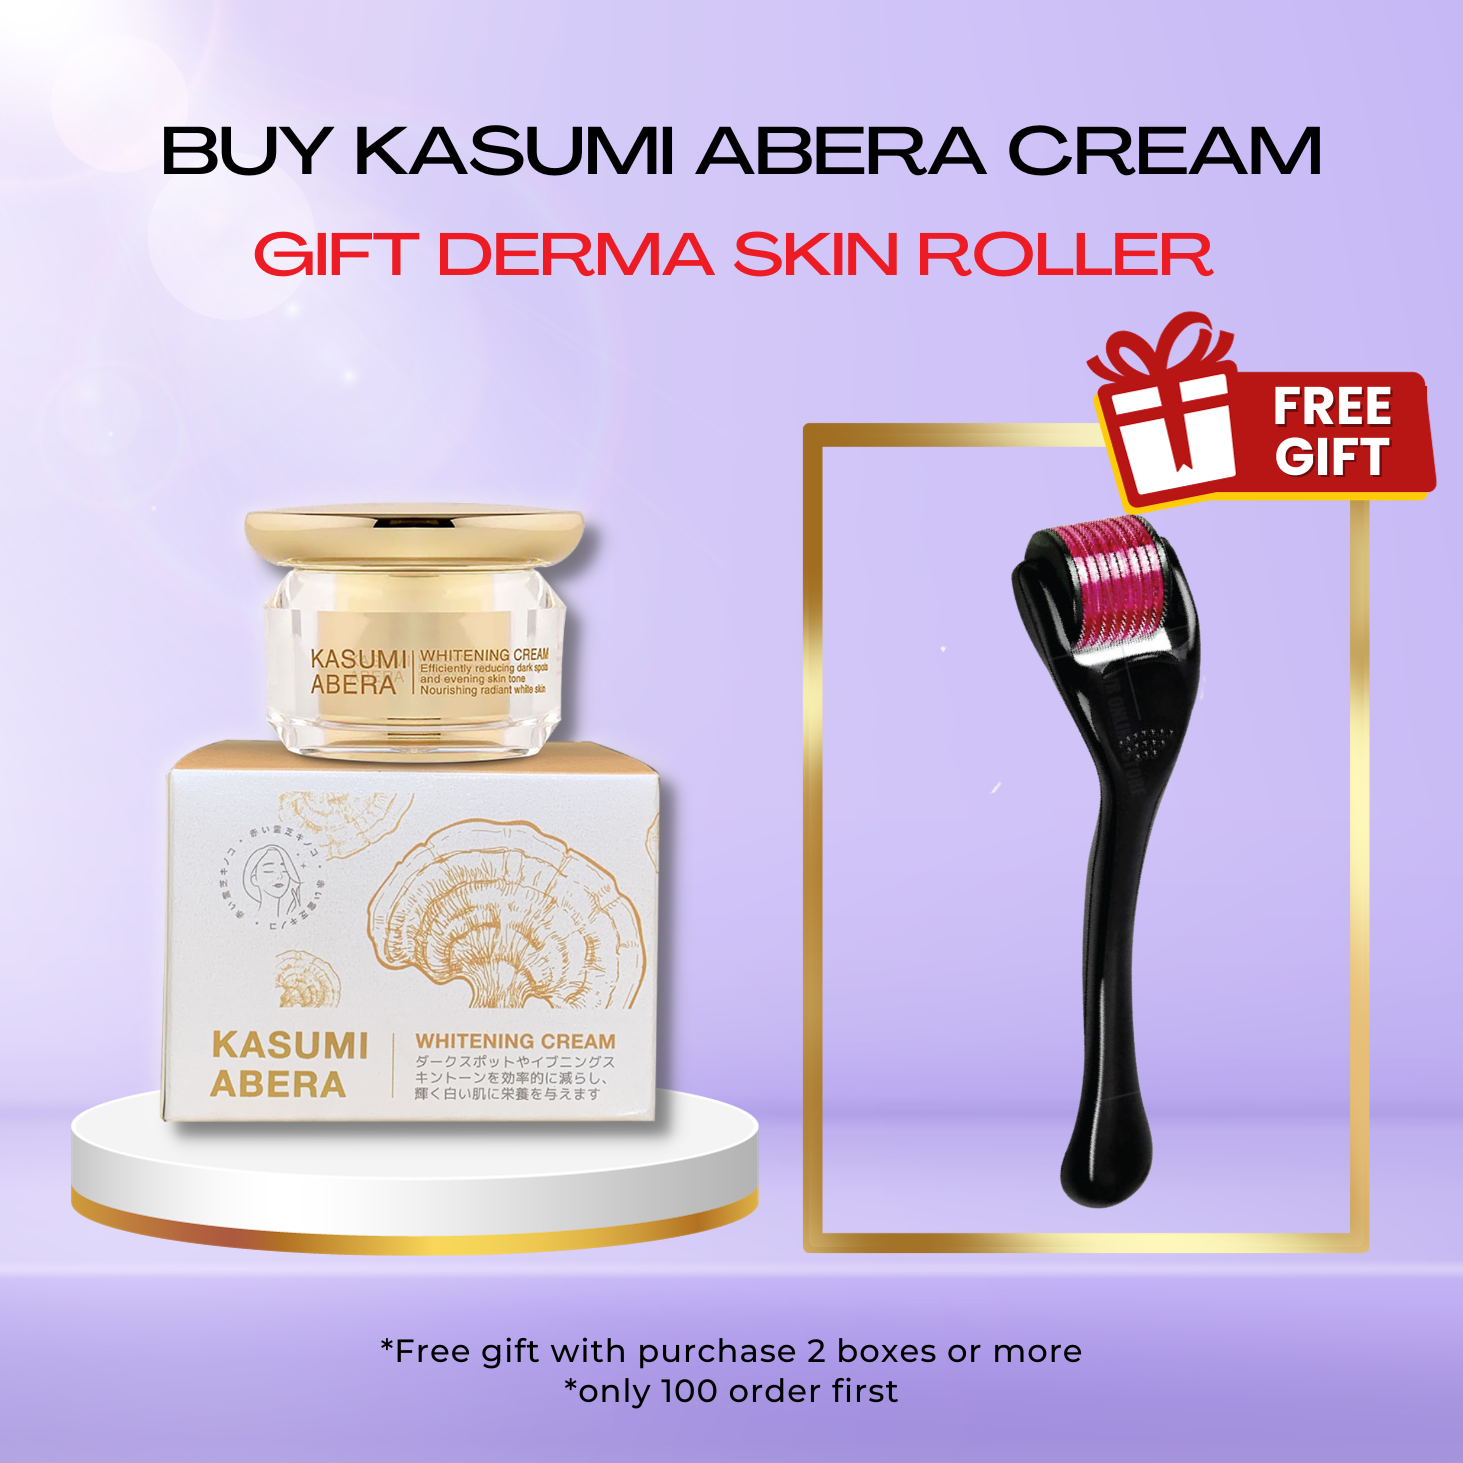 [SALE OFF 50%] Kasumi Abera Cream - GIFT Derma Skin Roller - MV